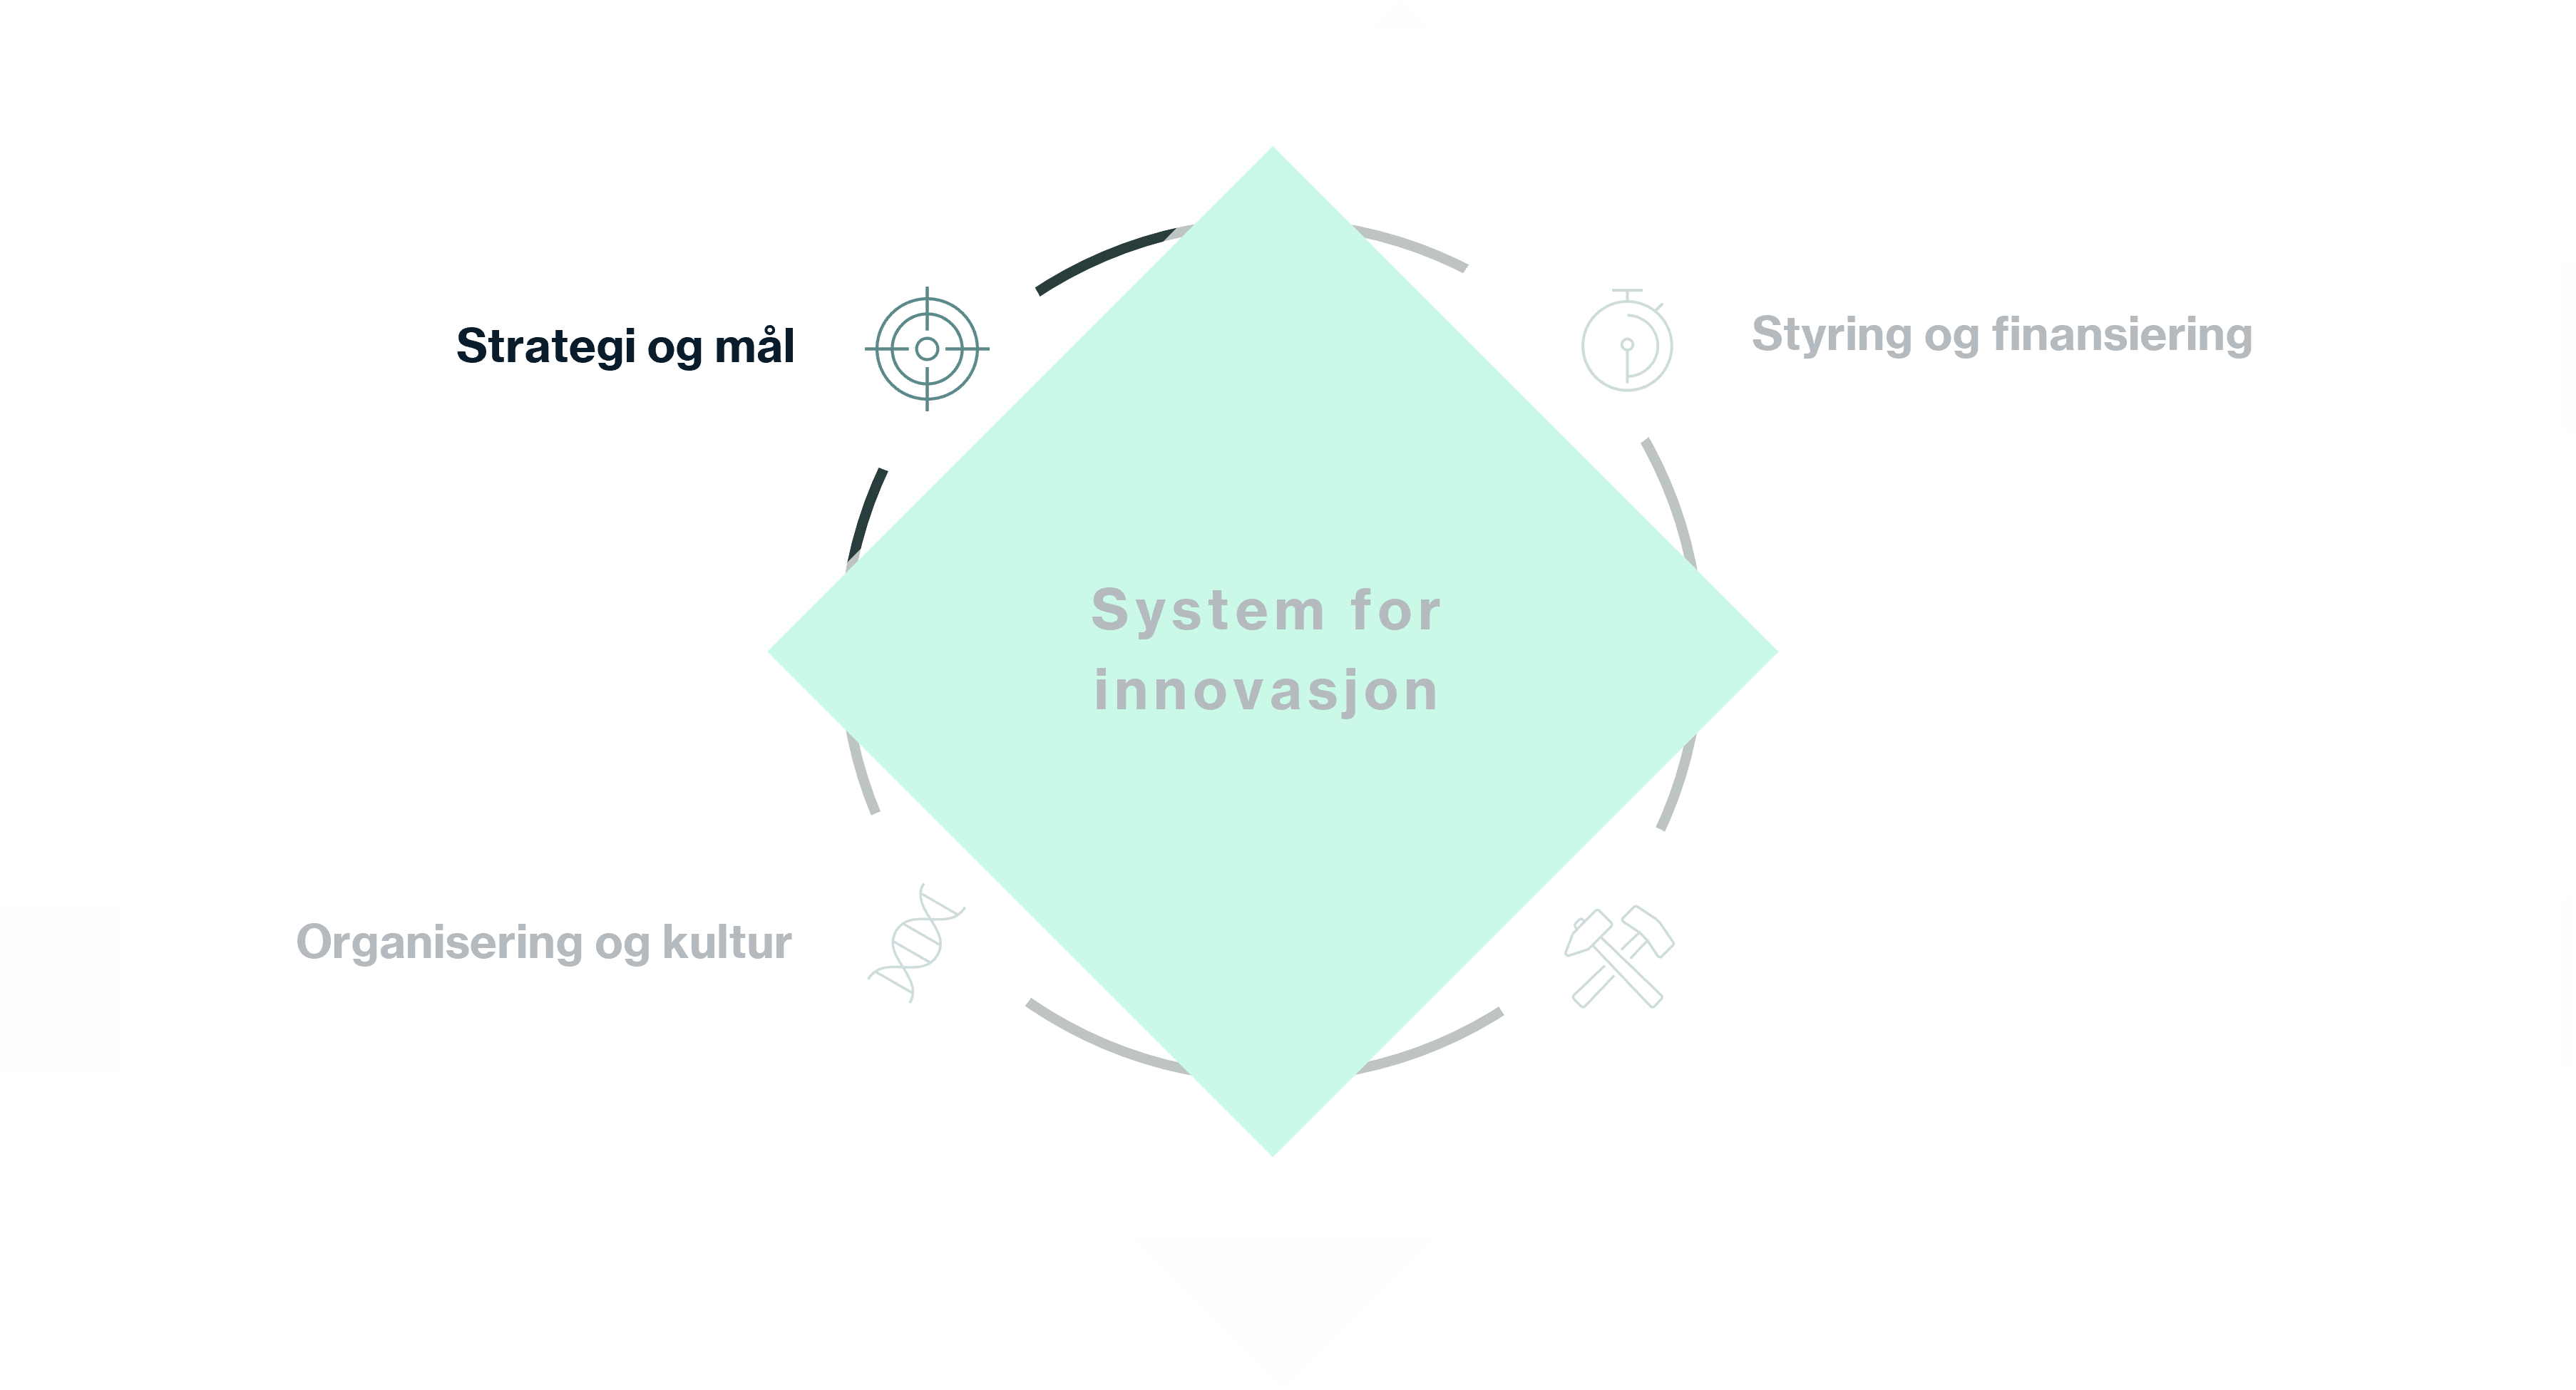 Strategi og mål er den første byggeklossen i å sette innovasjon i system